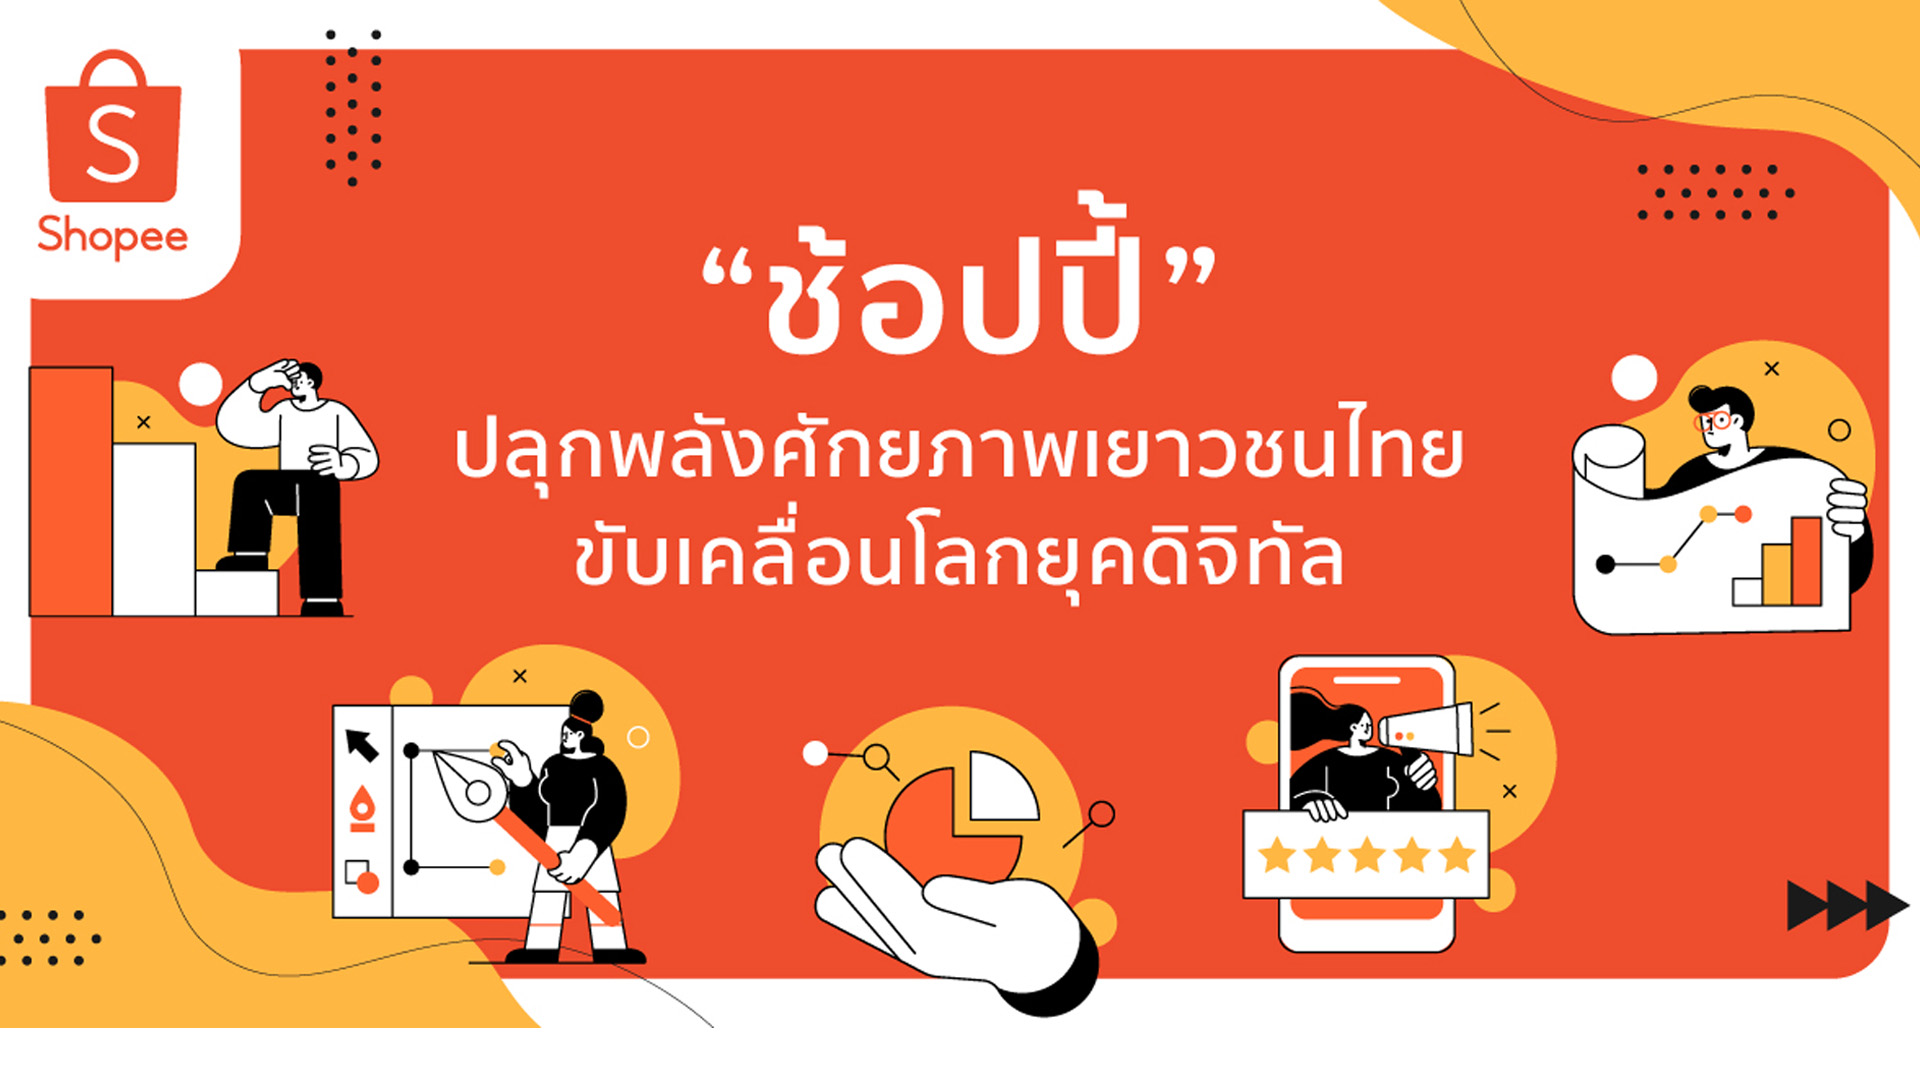 ‘ช้อปปี้’ ปลุกพลังศักยภาพเยาวชนไทย ขับเคลื่อนโลกยุคดิจิทัล จัด 2 การแข่งขันเชิงธุรกิจออนไลน์แห่งปี 2565